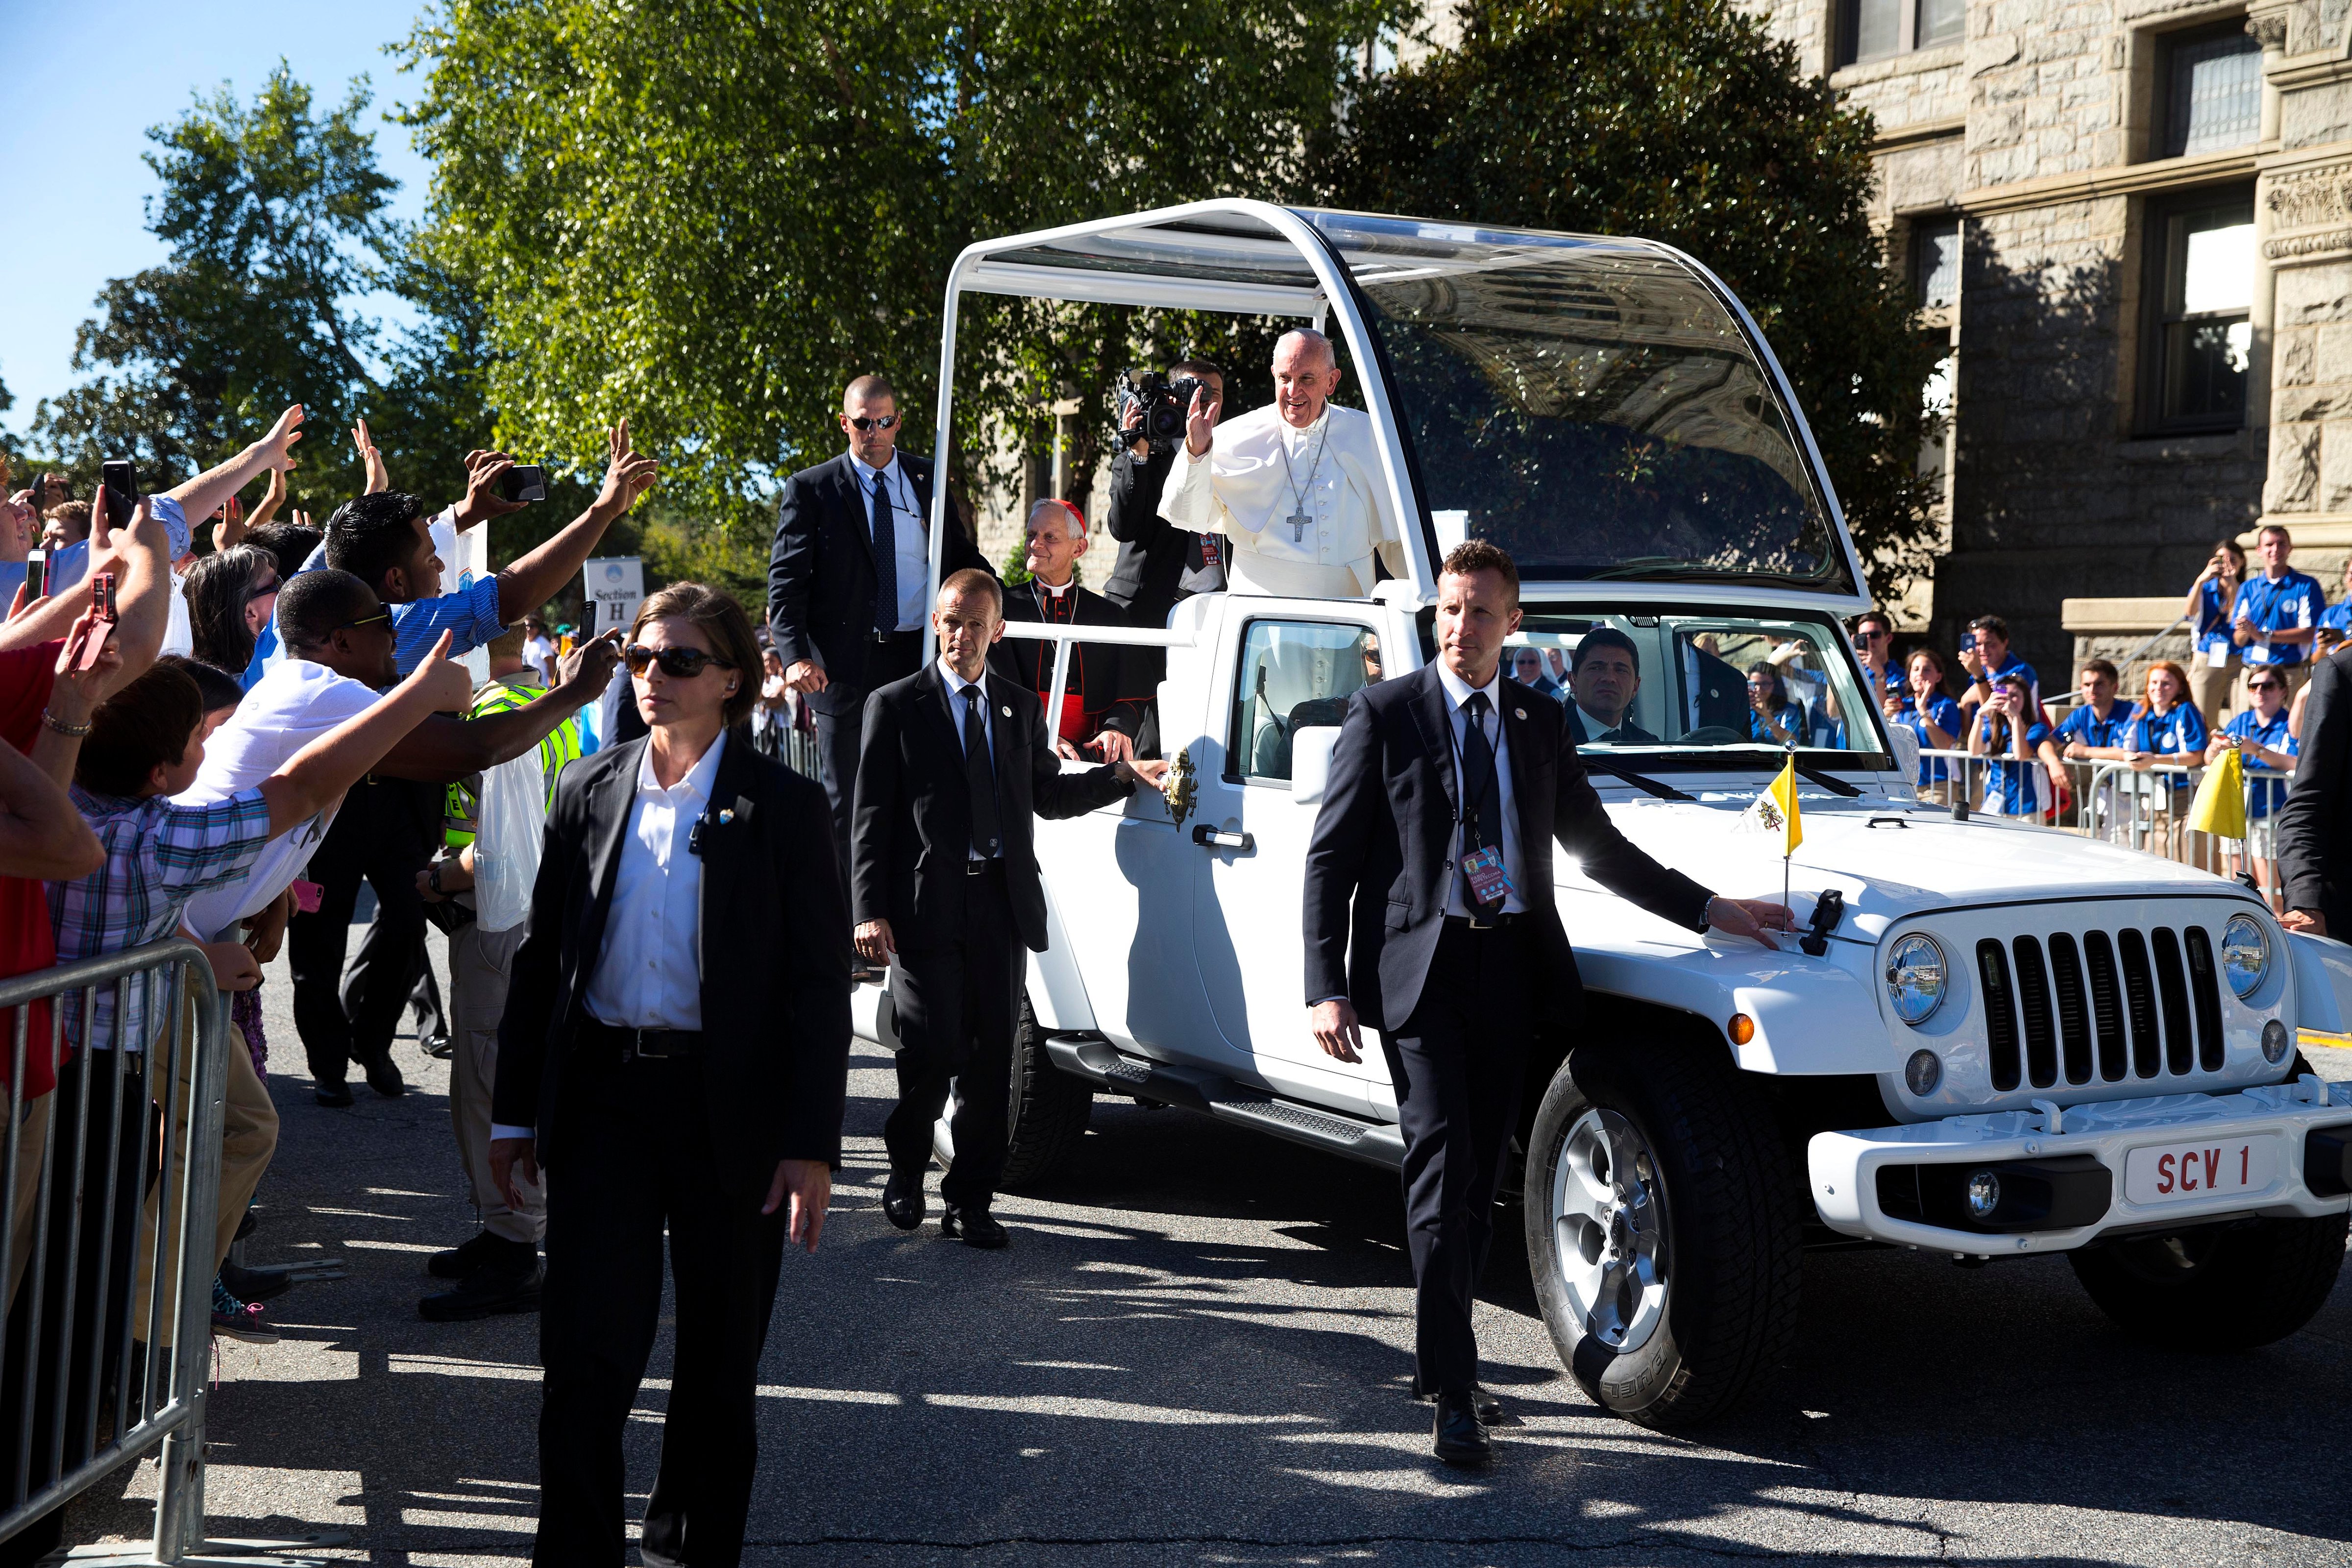 Pope Francis arrives at Catholic University for Canonization Mass in Washington